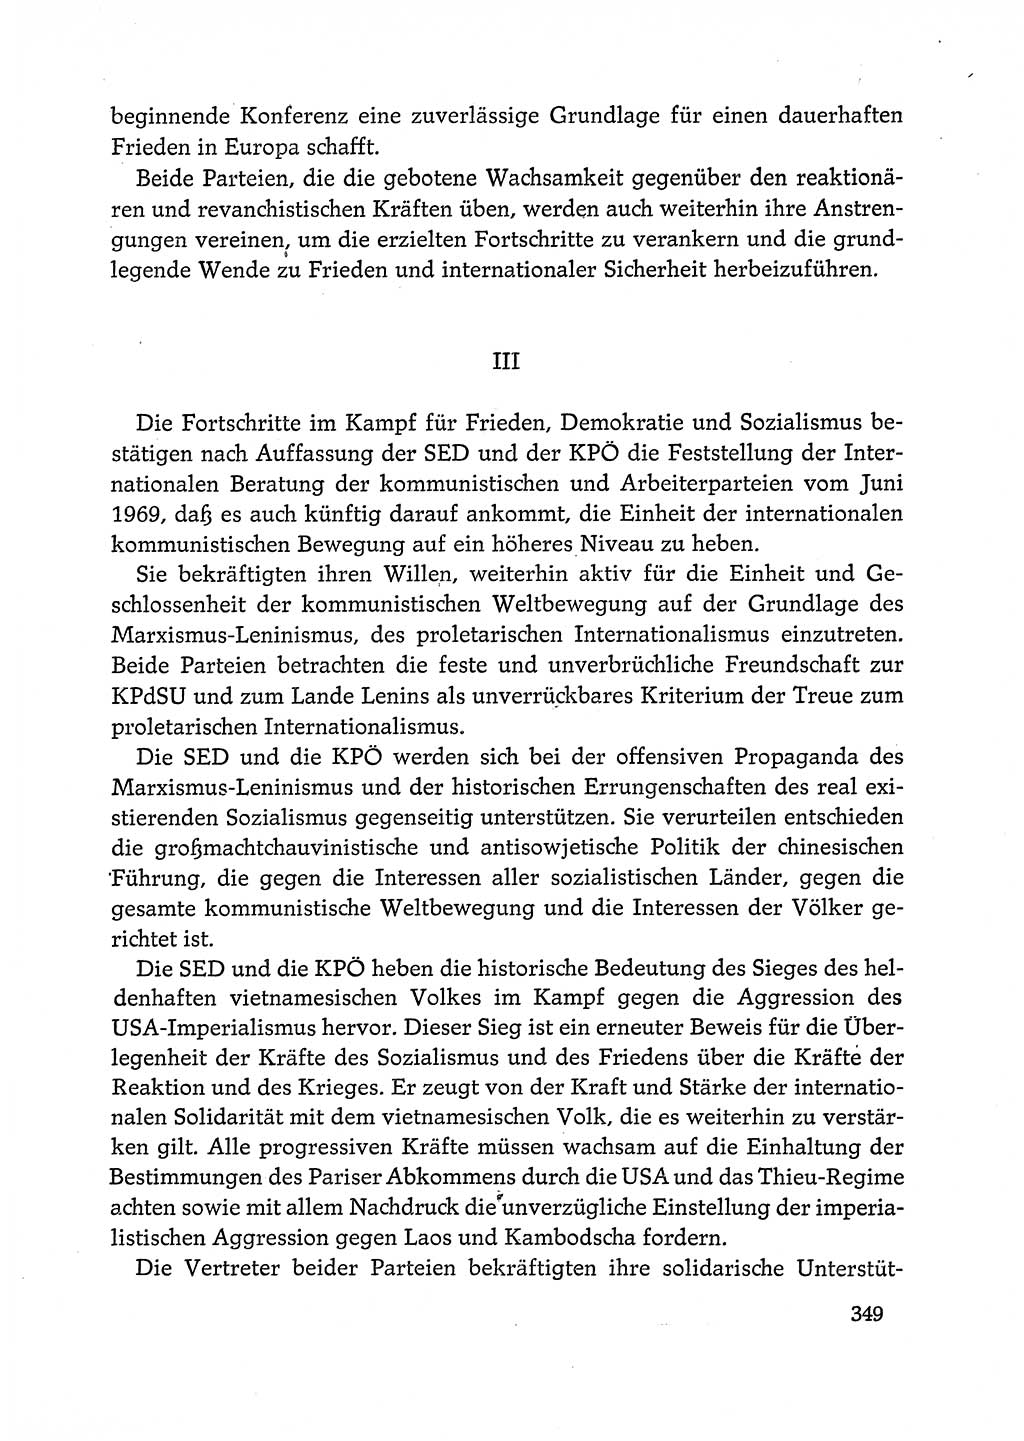 Dokumente der Sozialistischen Einheitspartei Deutschlands (SED) [Deutsche Demokratische Republik (DDR)] 1972-1973, Seite 349 (Dok. SED DDR 1972-1973, S. 349)